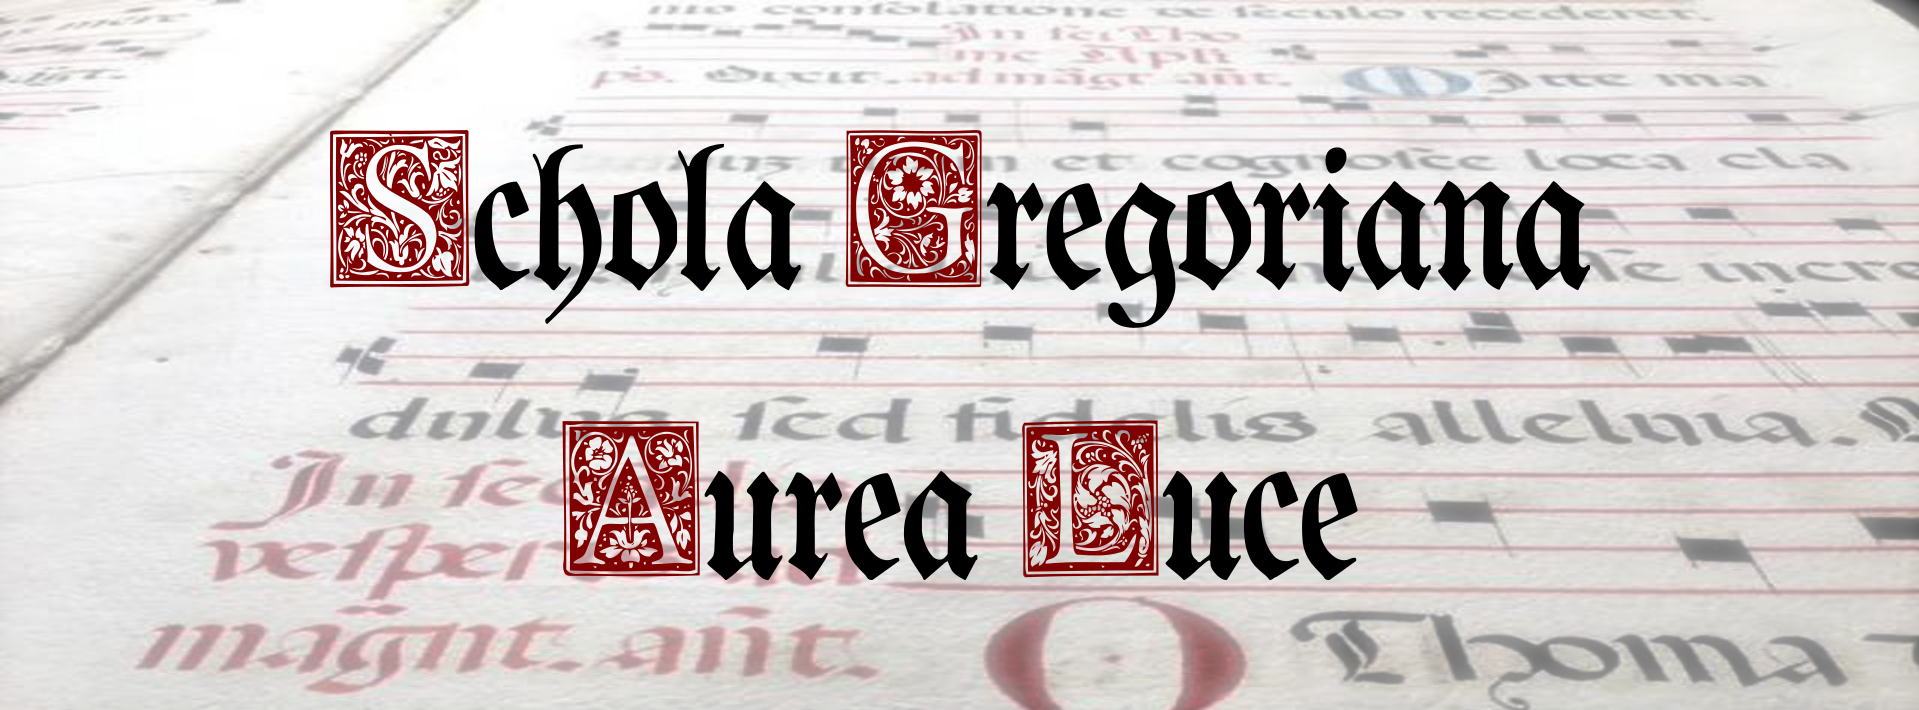 Schola gregoriana